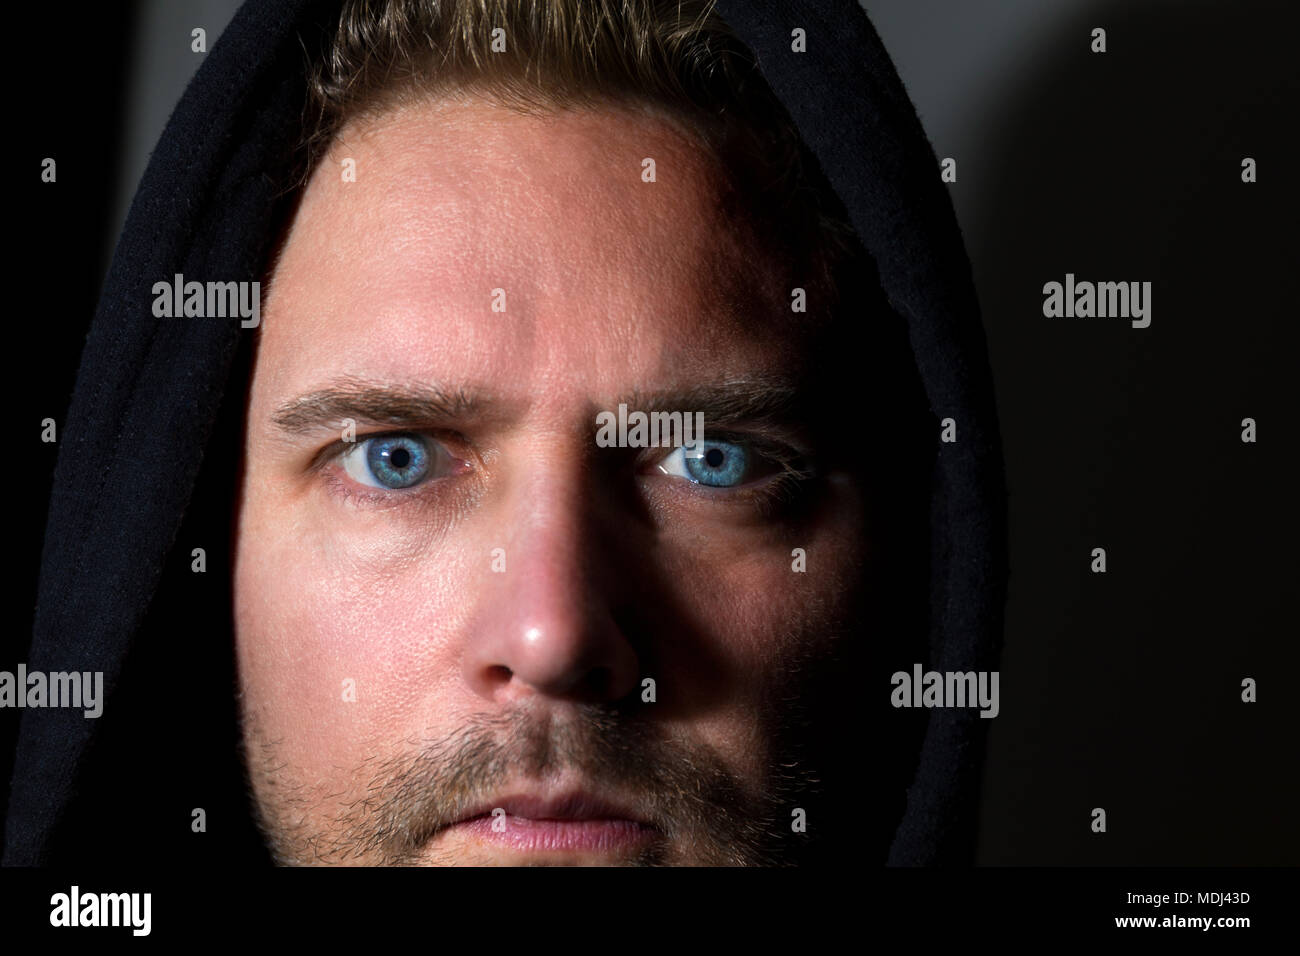 Close up volto ritratto di metà adulto uomo caucasico con impressionante penetranti occhi blu contro uno sfondo scuro modello di rilascio: Sì. Proprietà di rilascio: No. Foto Stock